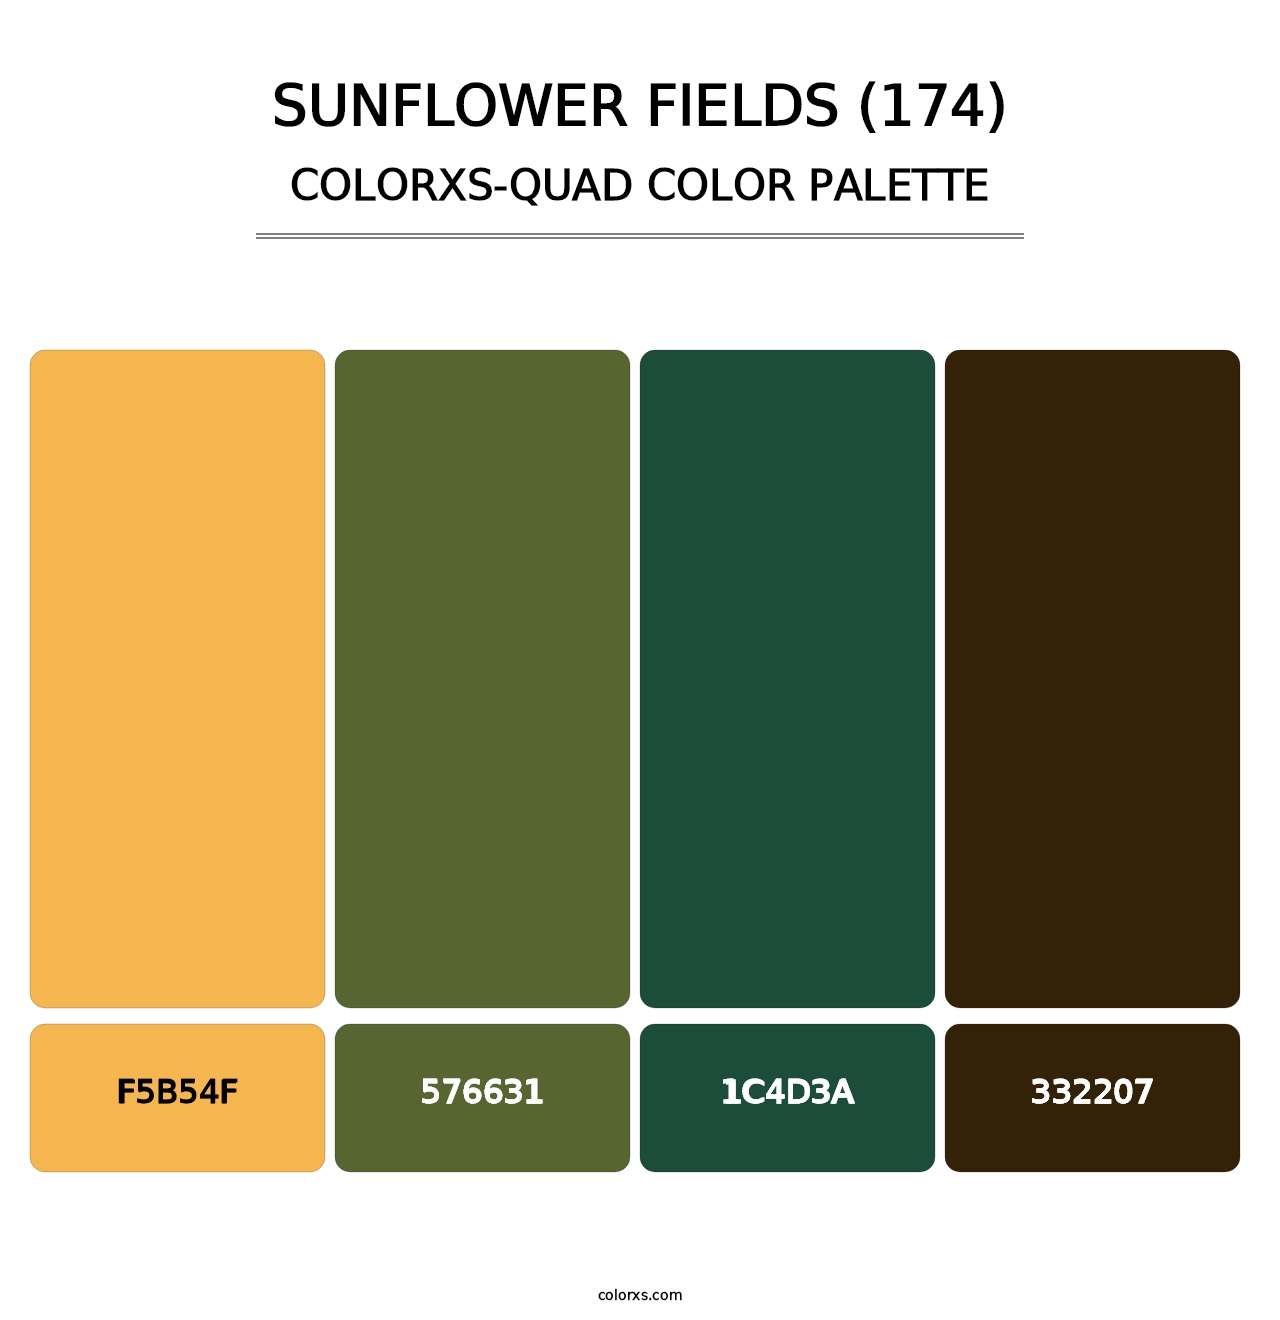 Sunflower Fields (174) - Colorxs Quad Palette